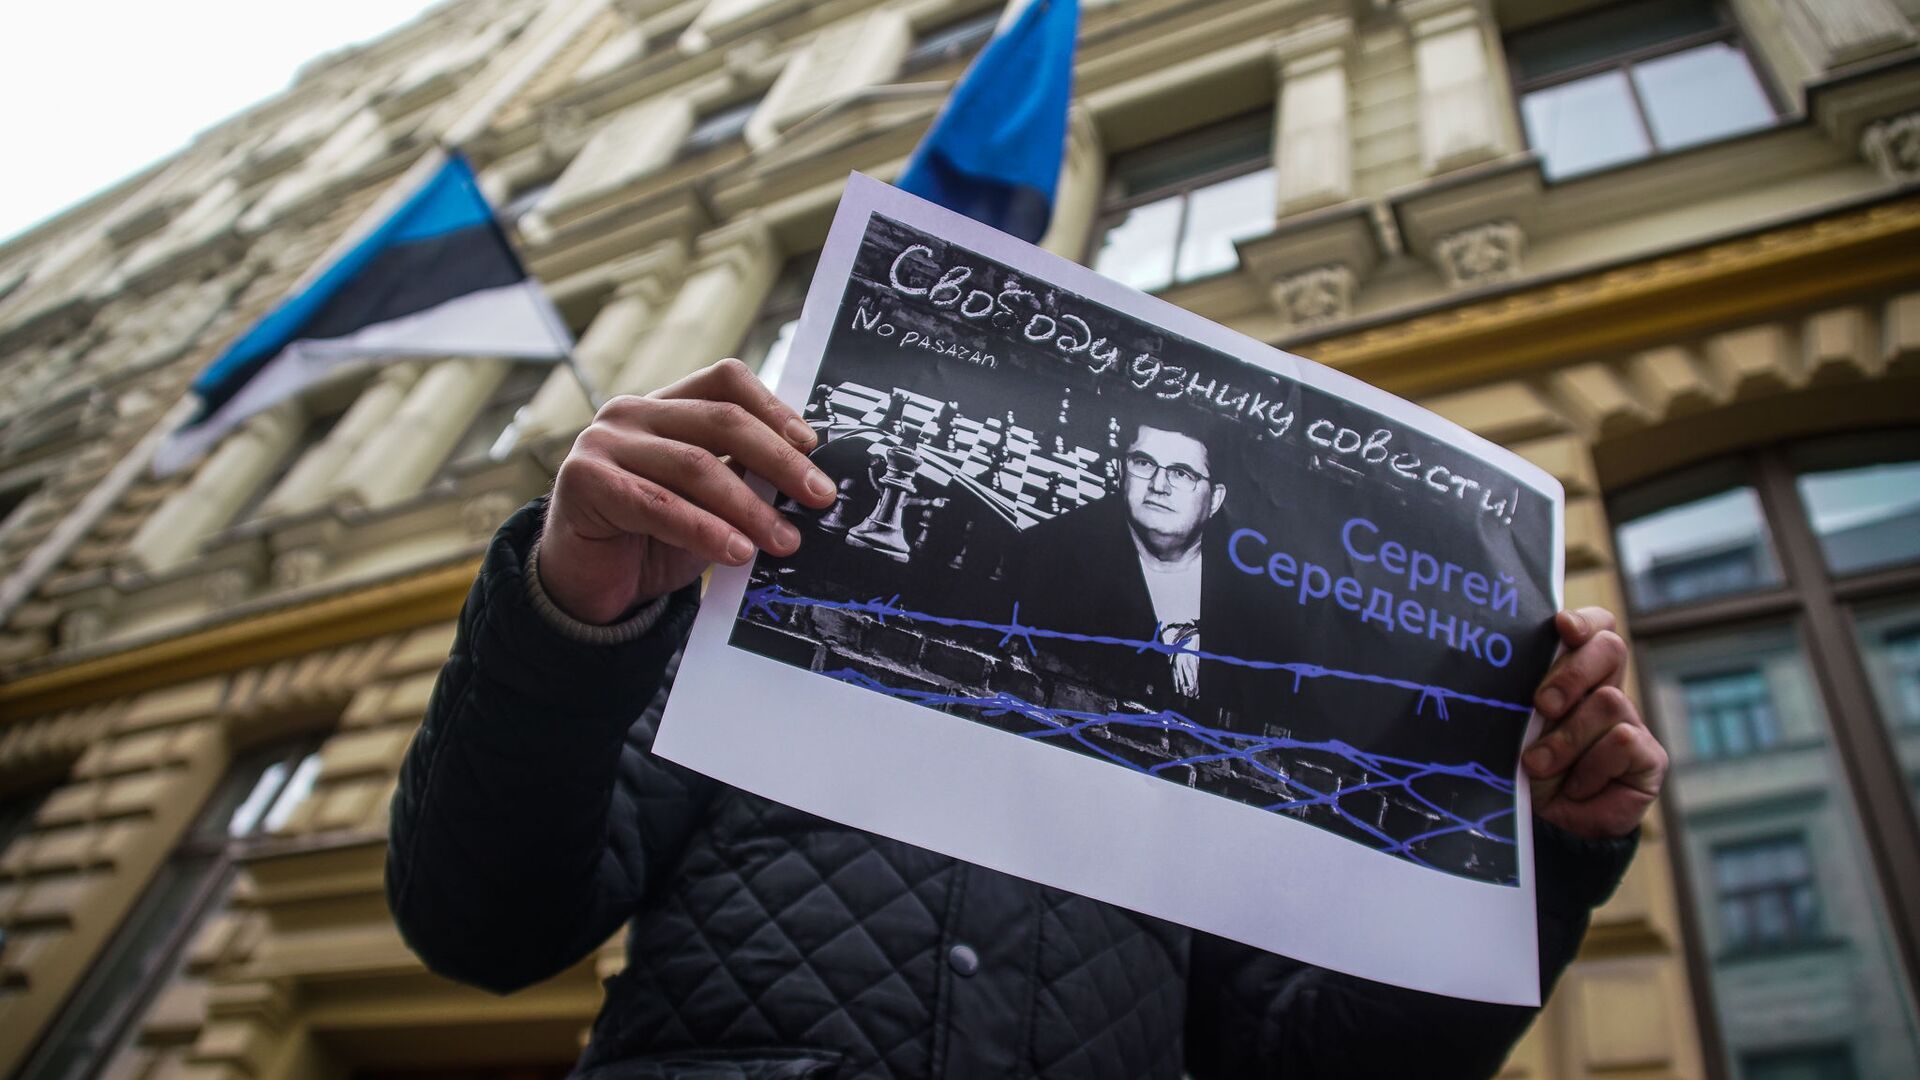 На пикет к посольству Эстонии в Риге активисты принесли плакаты с требованием Свободу узнику совести! Сергею Середенко  - Sputnik Латвия, 1920, 08.04.2021